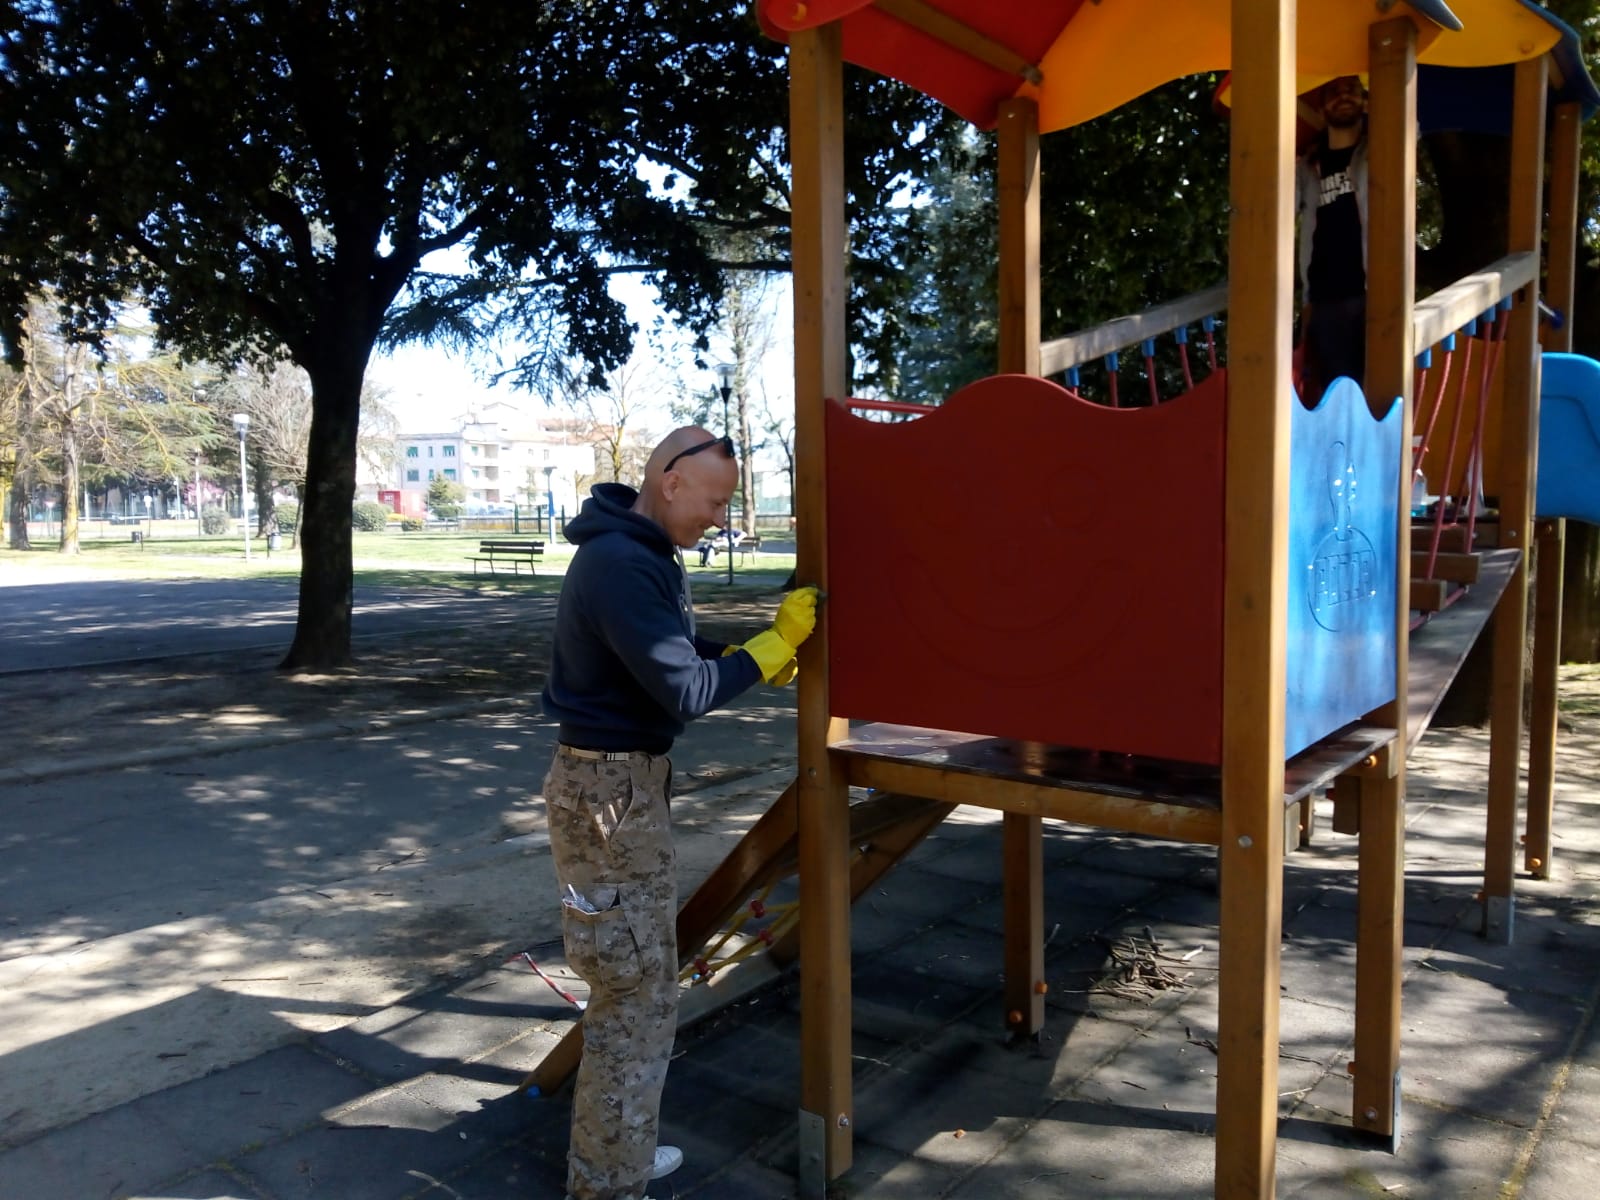 CasaPound ripulisce il Parco Arno: “Abbiamo ridato colore ai giochi per bambini” – foto